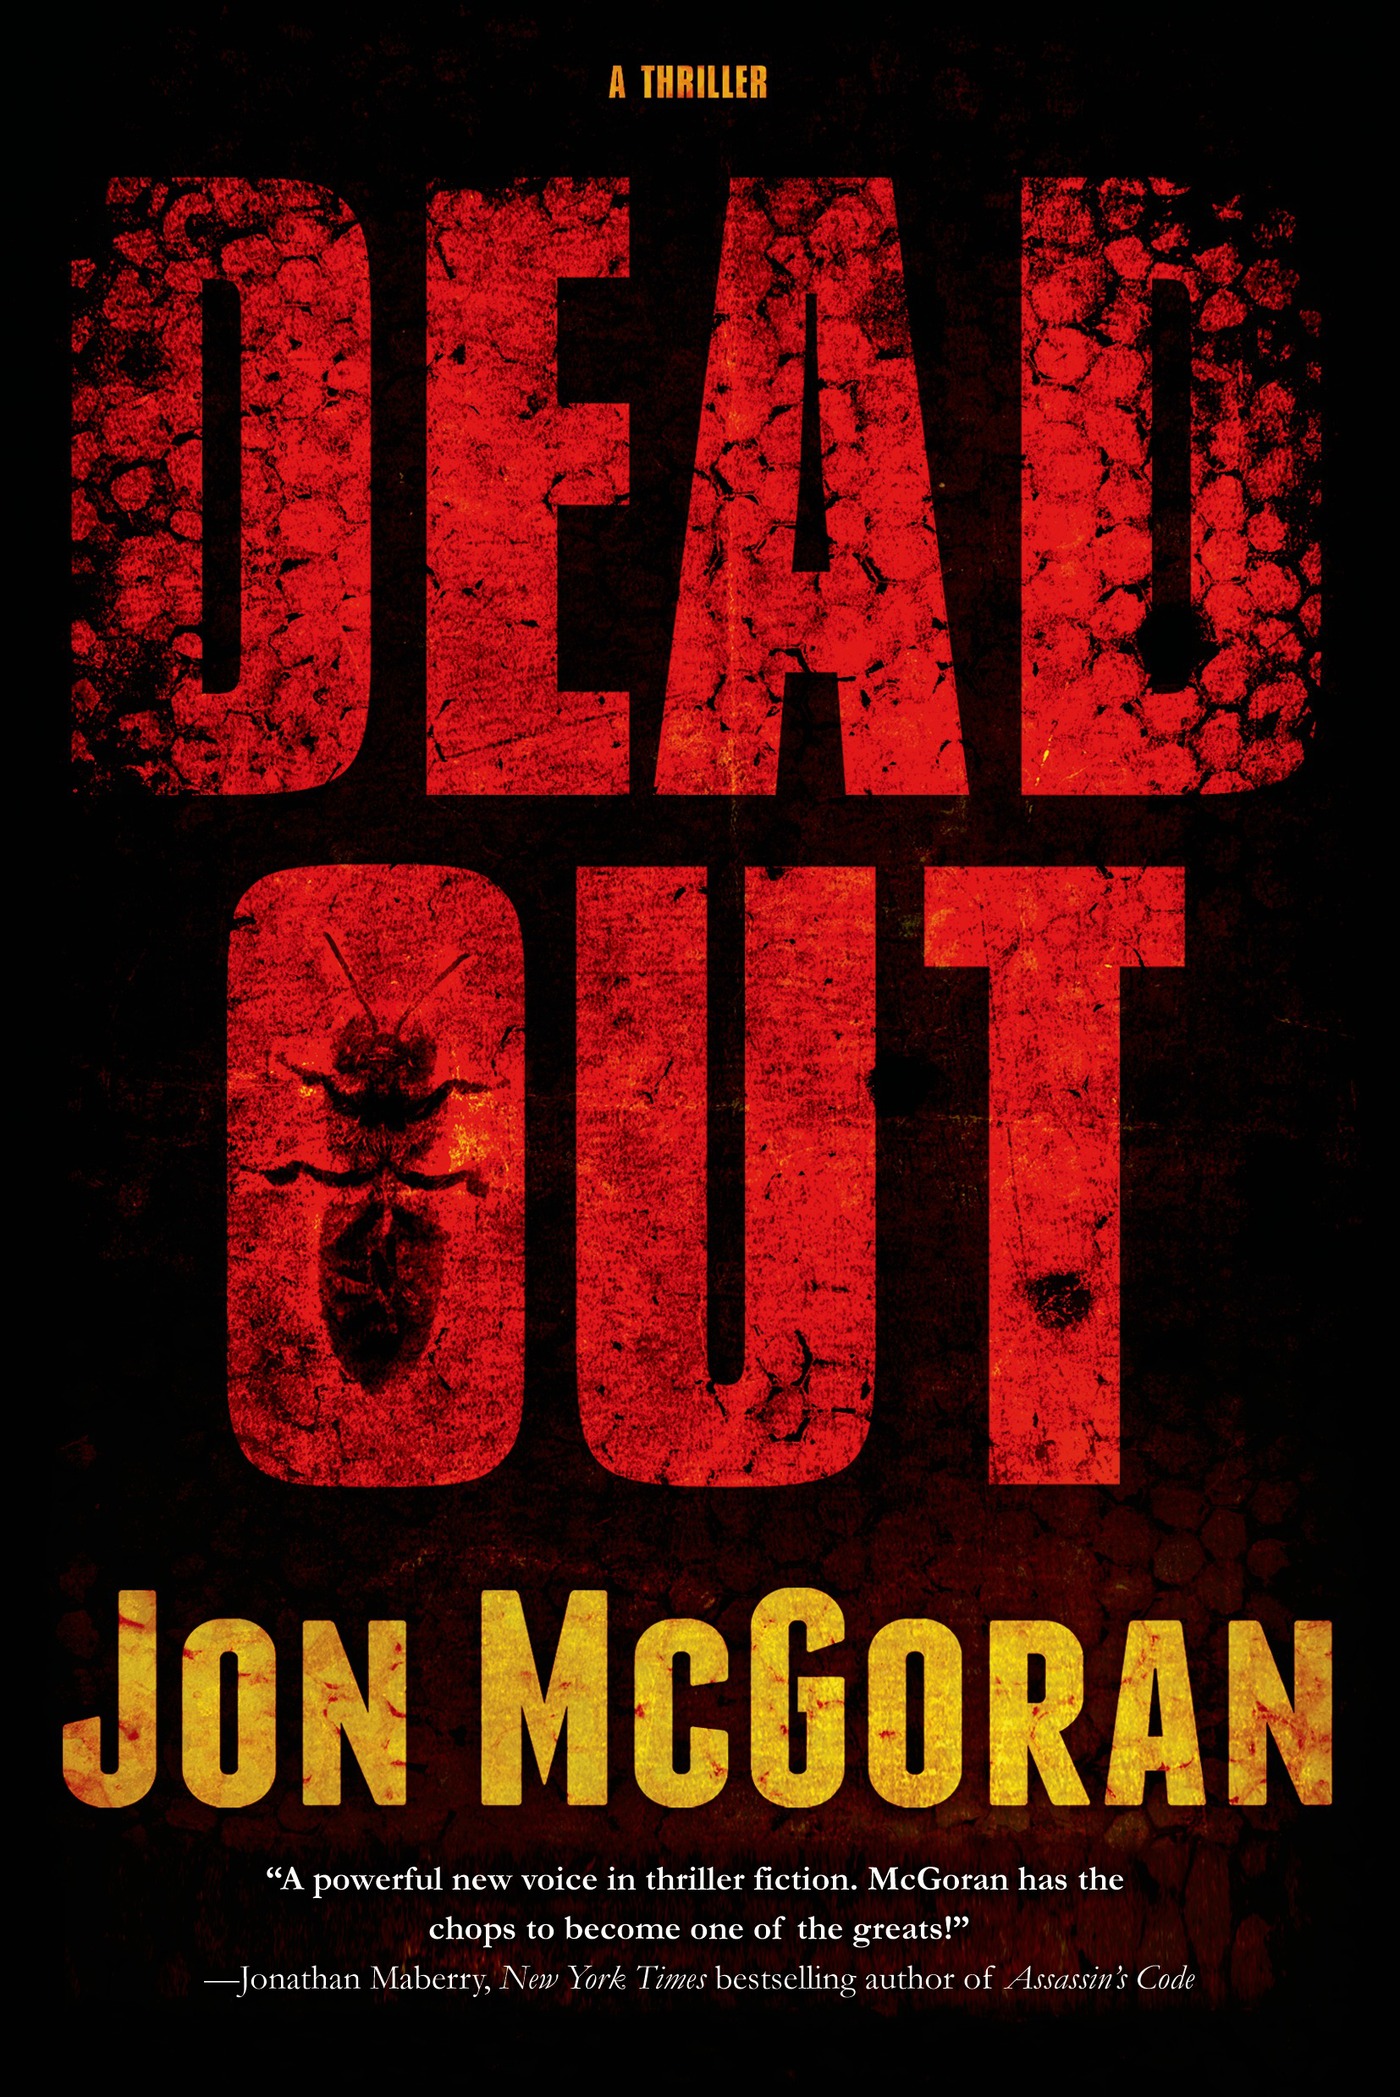 Deadout : A Thriller by Jon McGoran